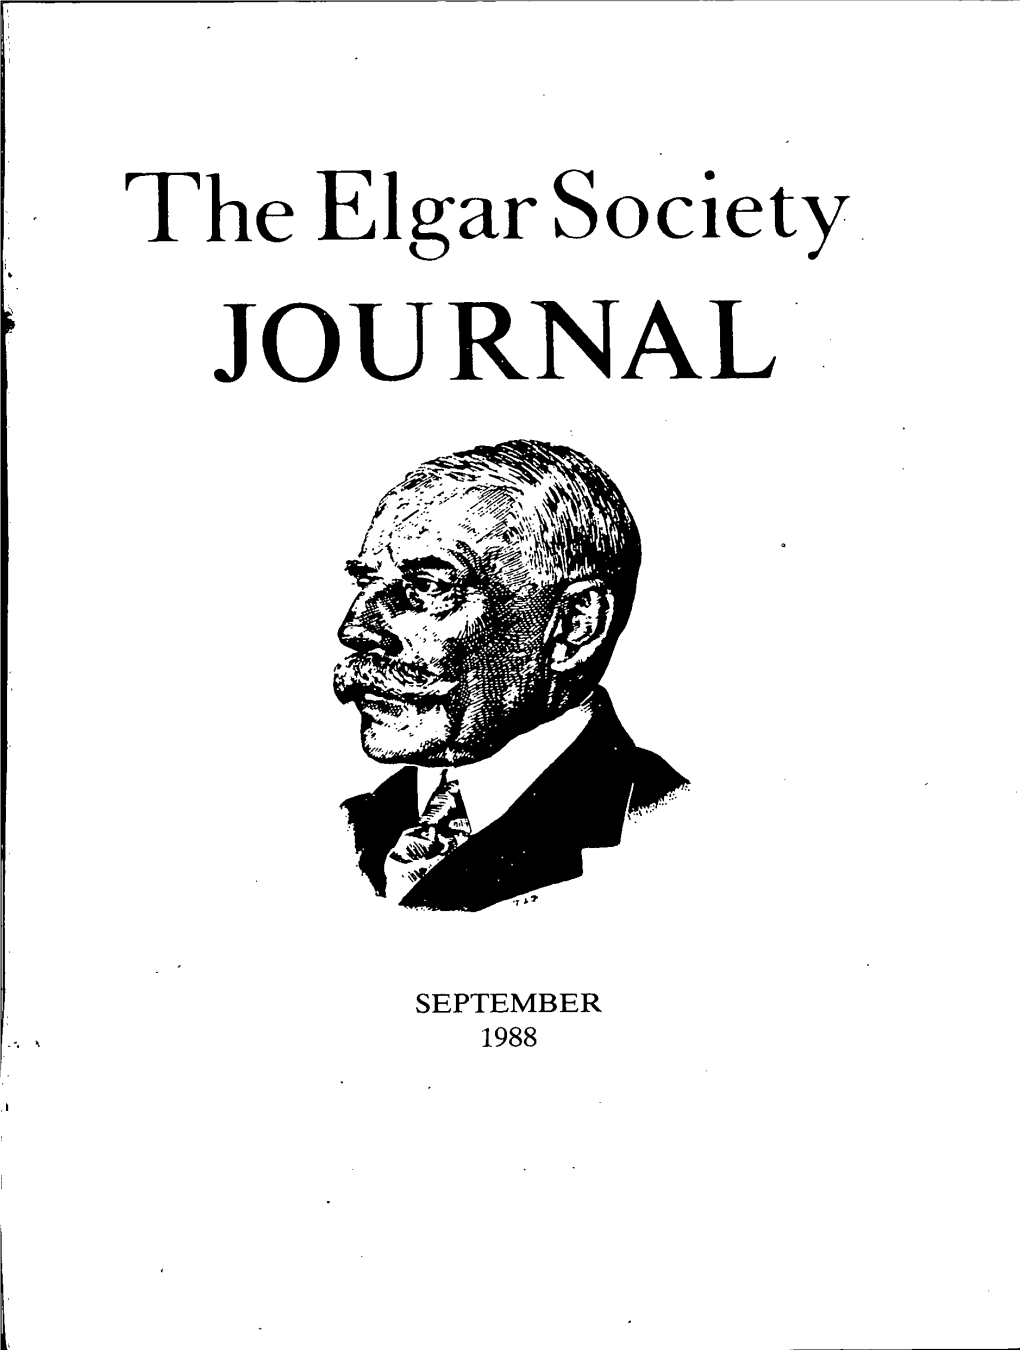 Journal September 1988